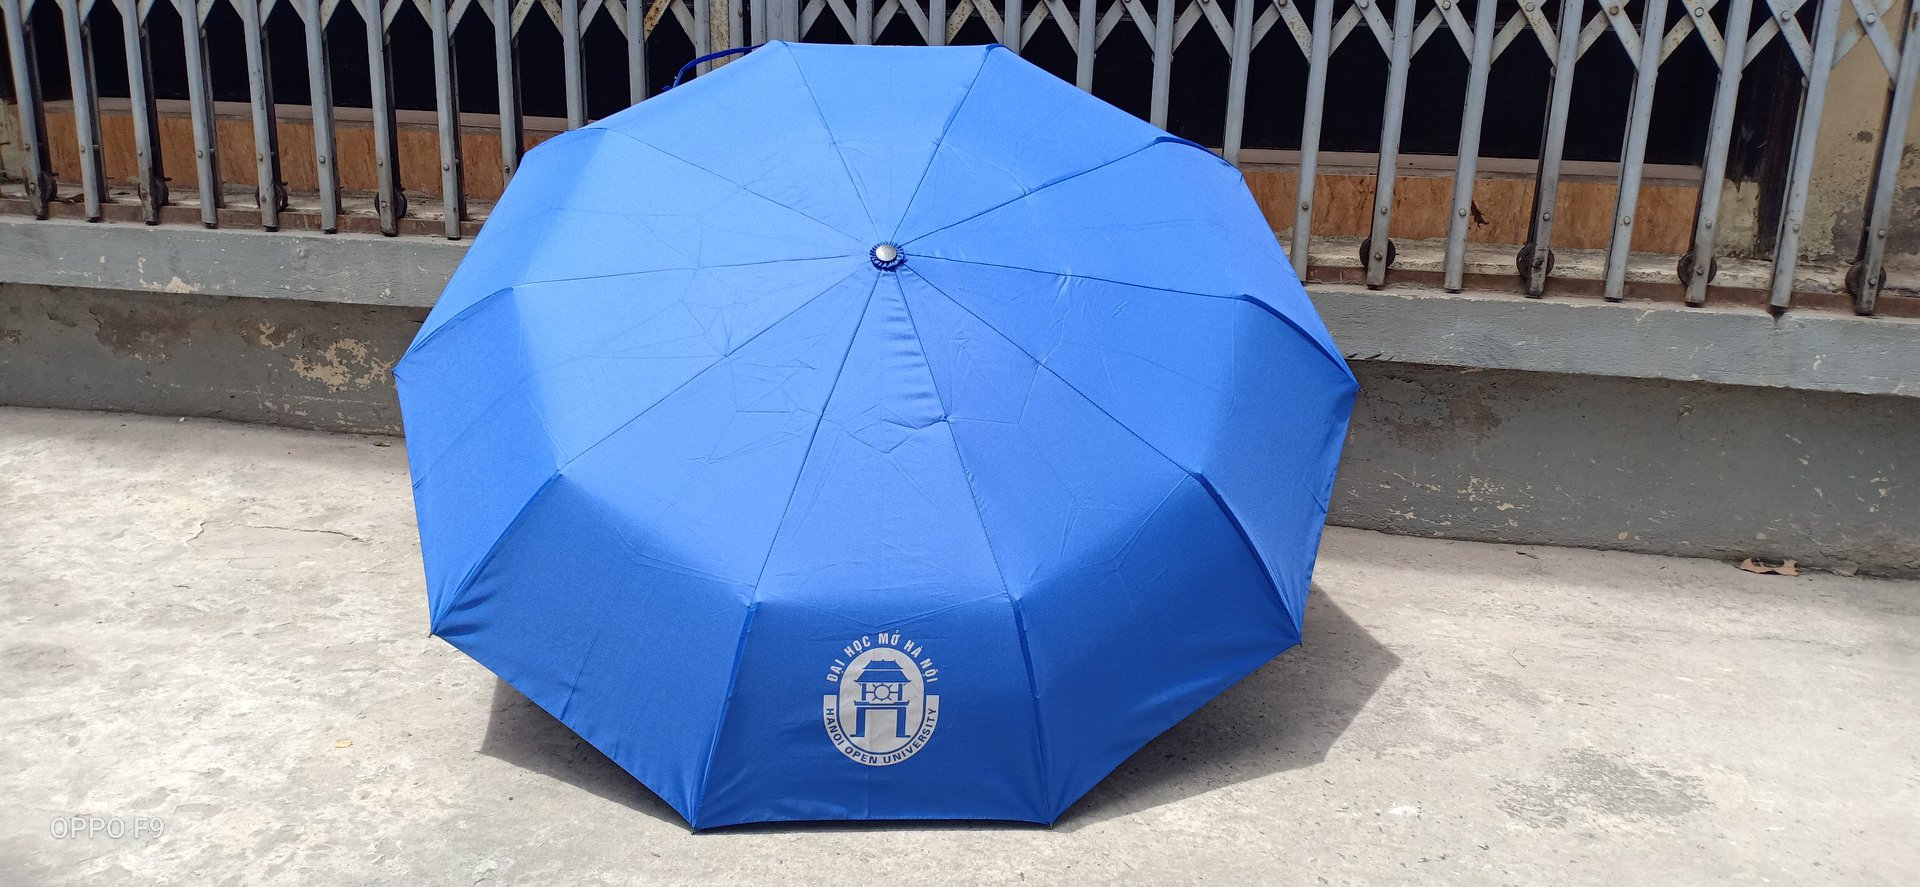 Xưởng sản xuất ô dù cầm tay mini in logo Hồ Chí Minh